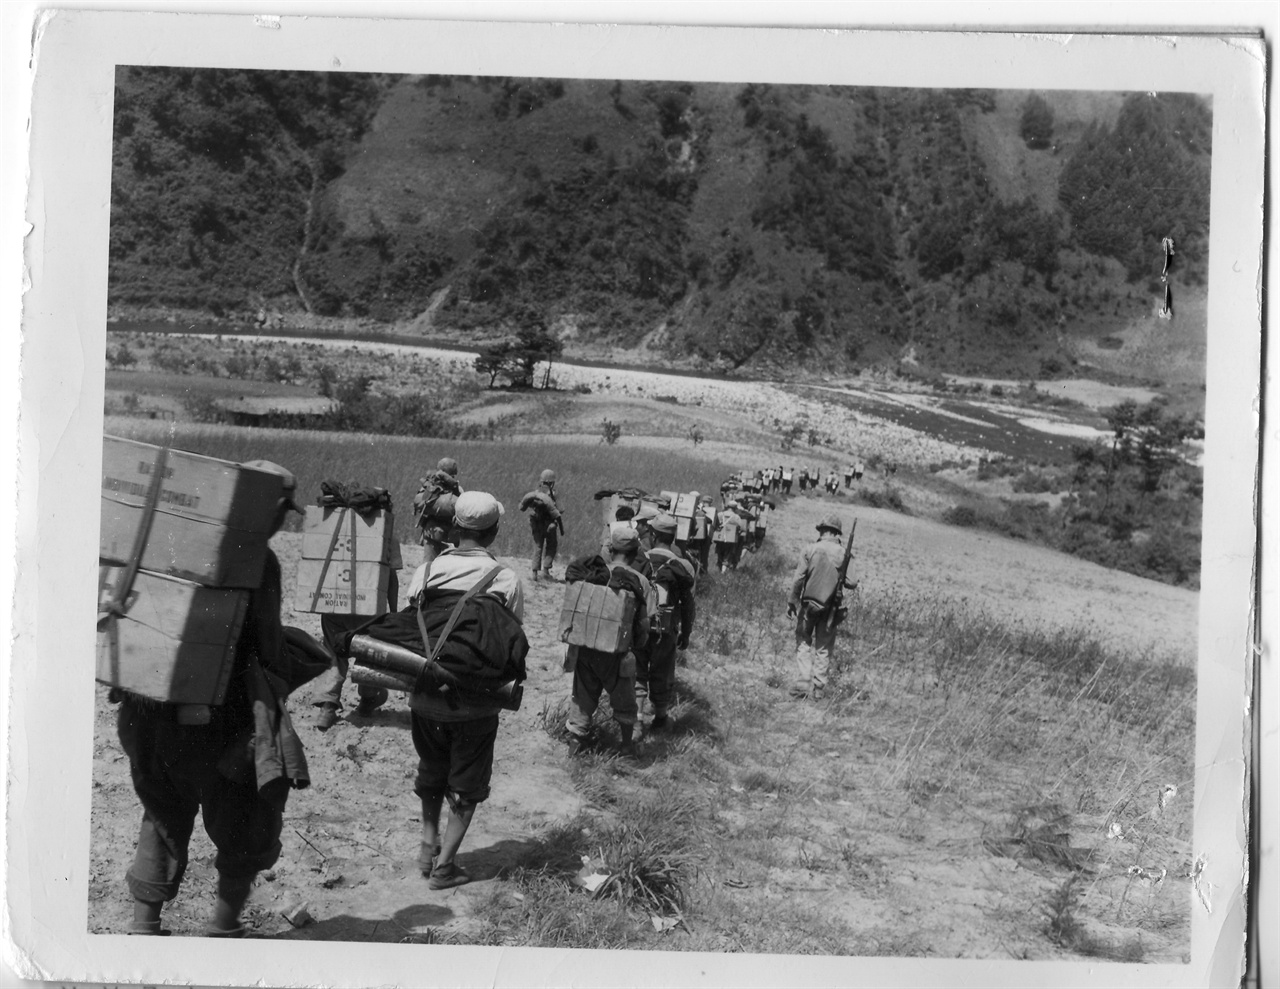  1951. 6. 2. 한국의 노무자들이 탄통 등 군수물자를 지게로 져서 나르고 있다.